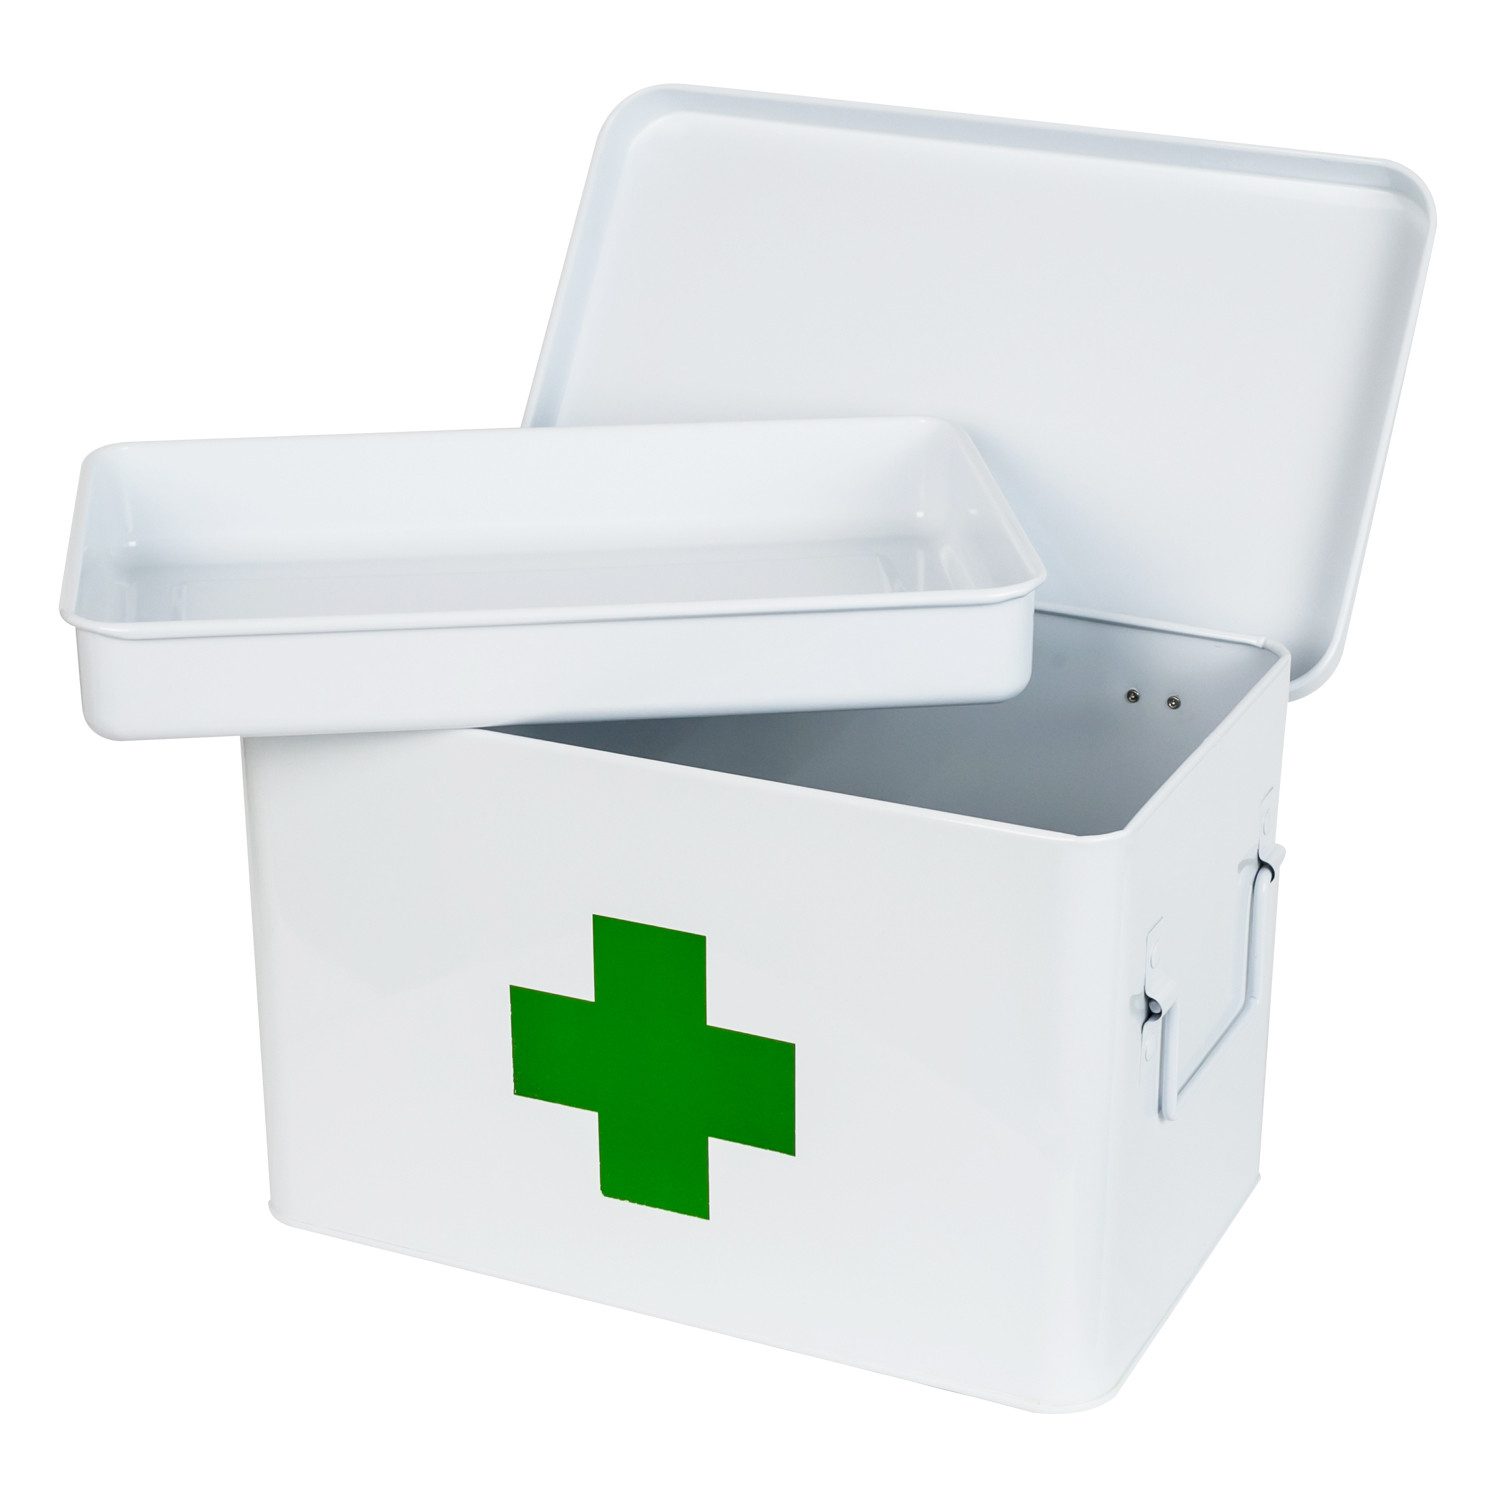 HMF Erste-Hilfe-Koffer Medizinkoffer, Hausapotheke, Medikamentenkoffer aus Metall, mit Tragegriffen, 32,5 x 20,5 x 20 cm, weiß